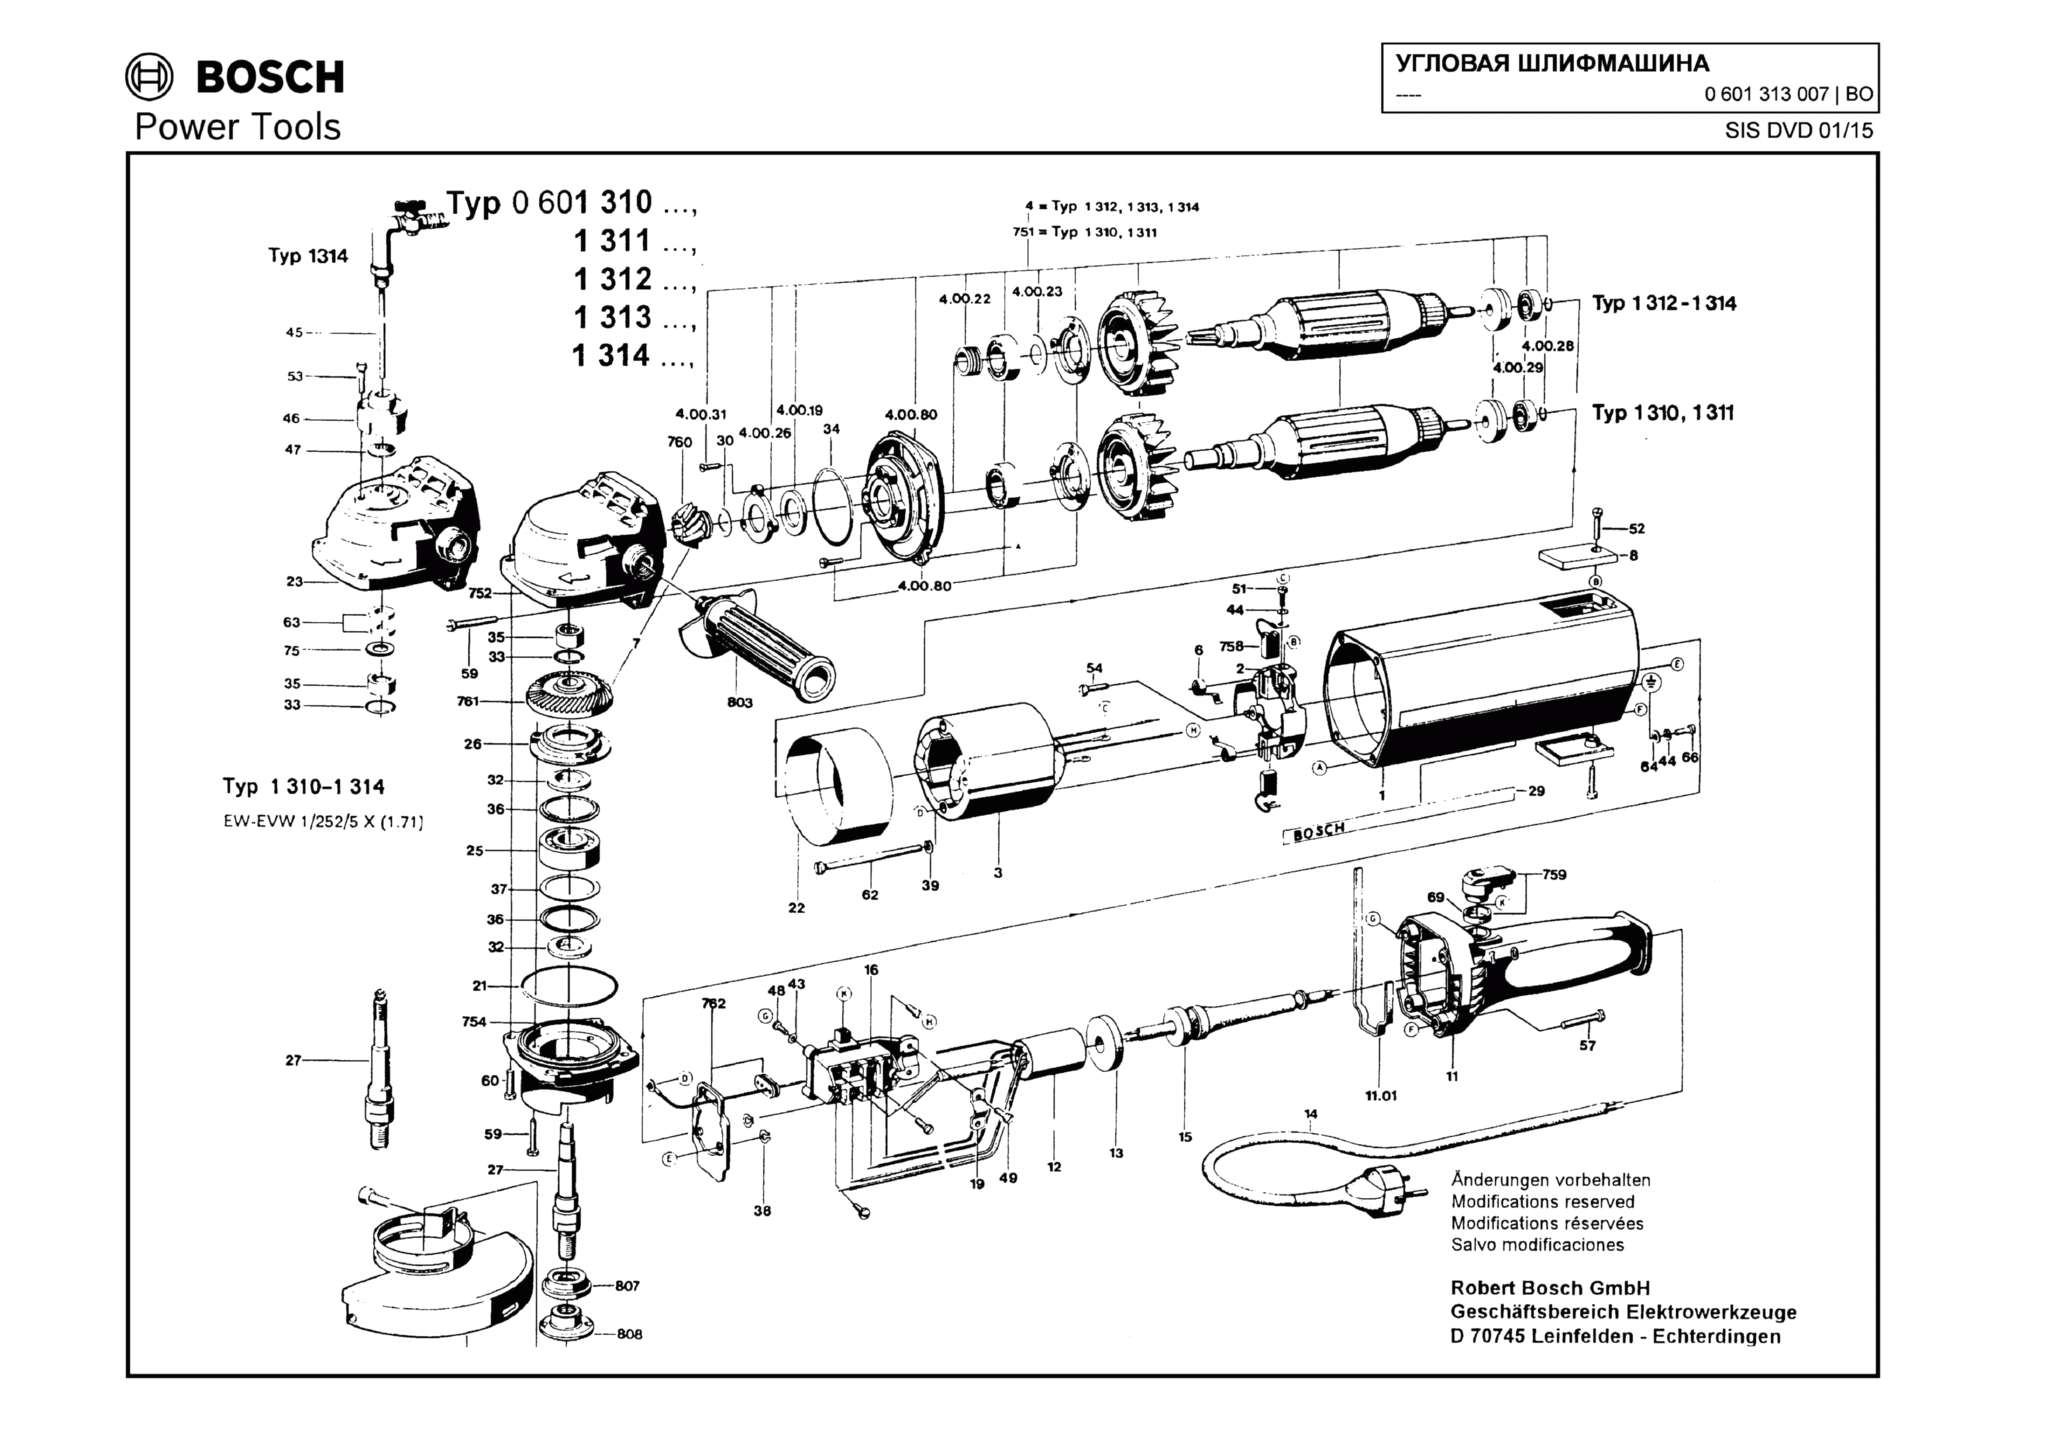 Запчасти, схема и деталировка Bosch (ТИП 0601313007)